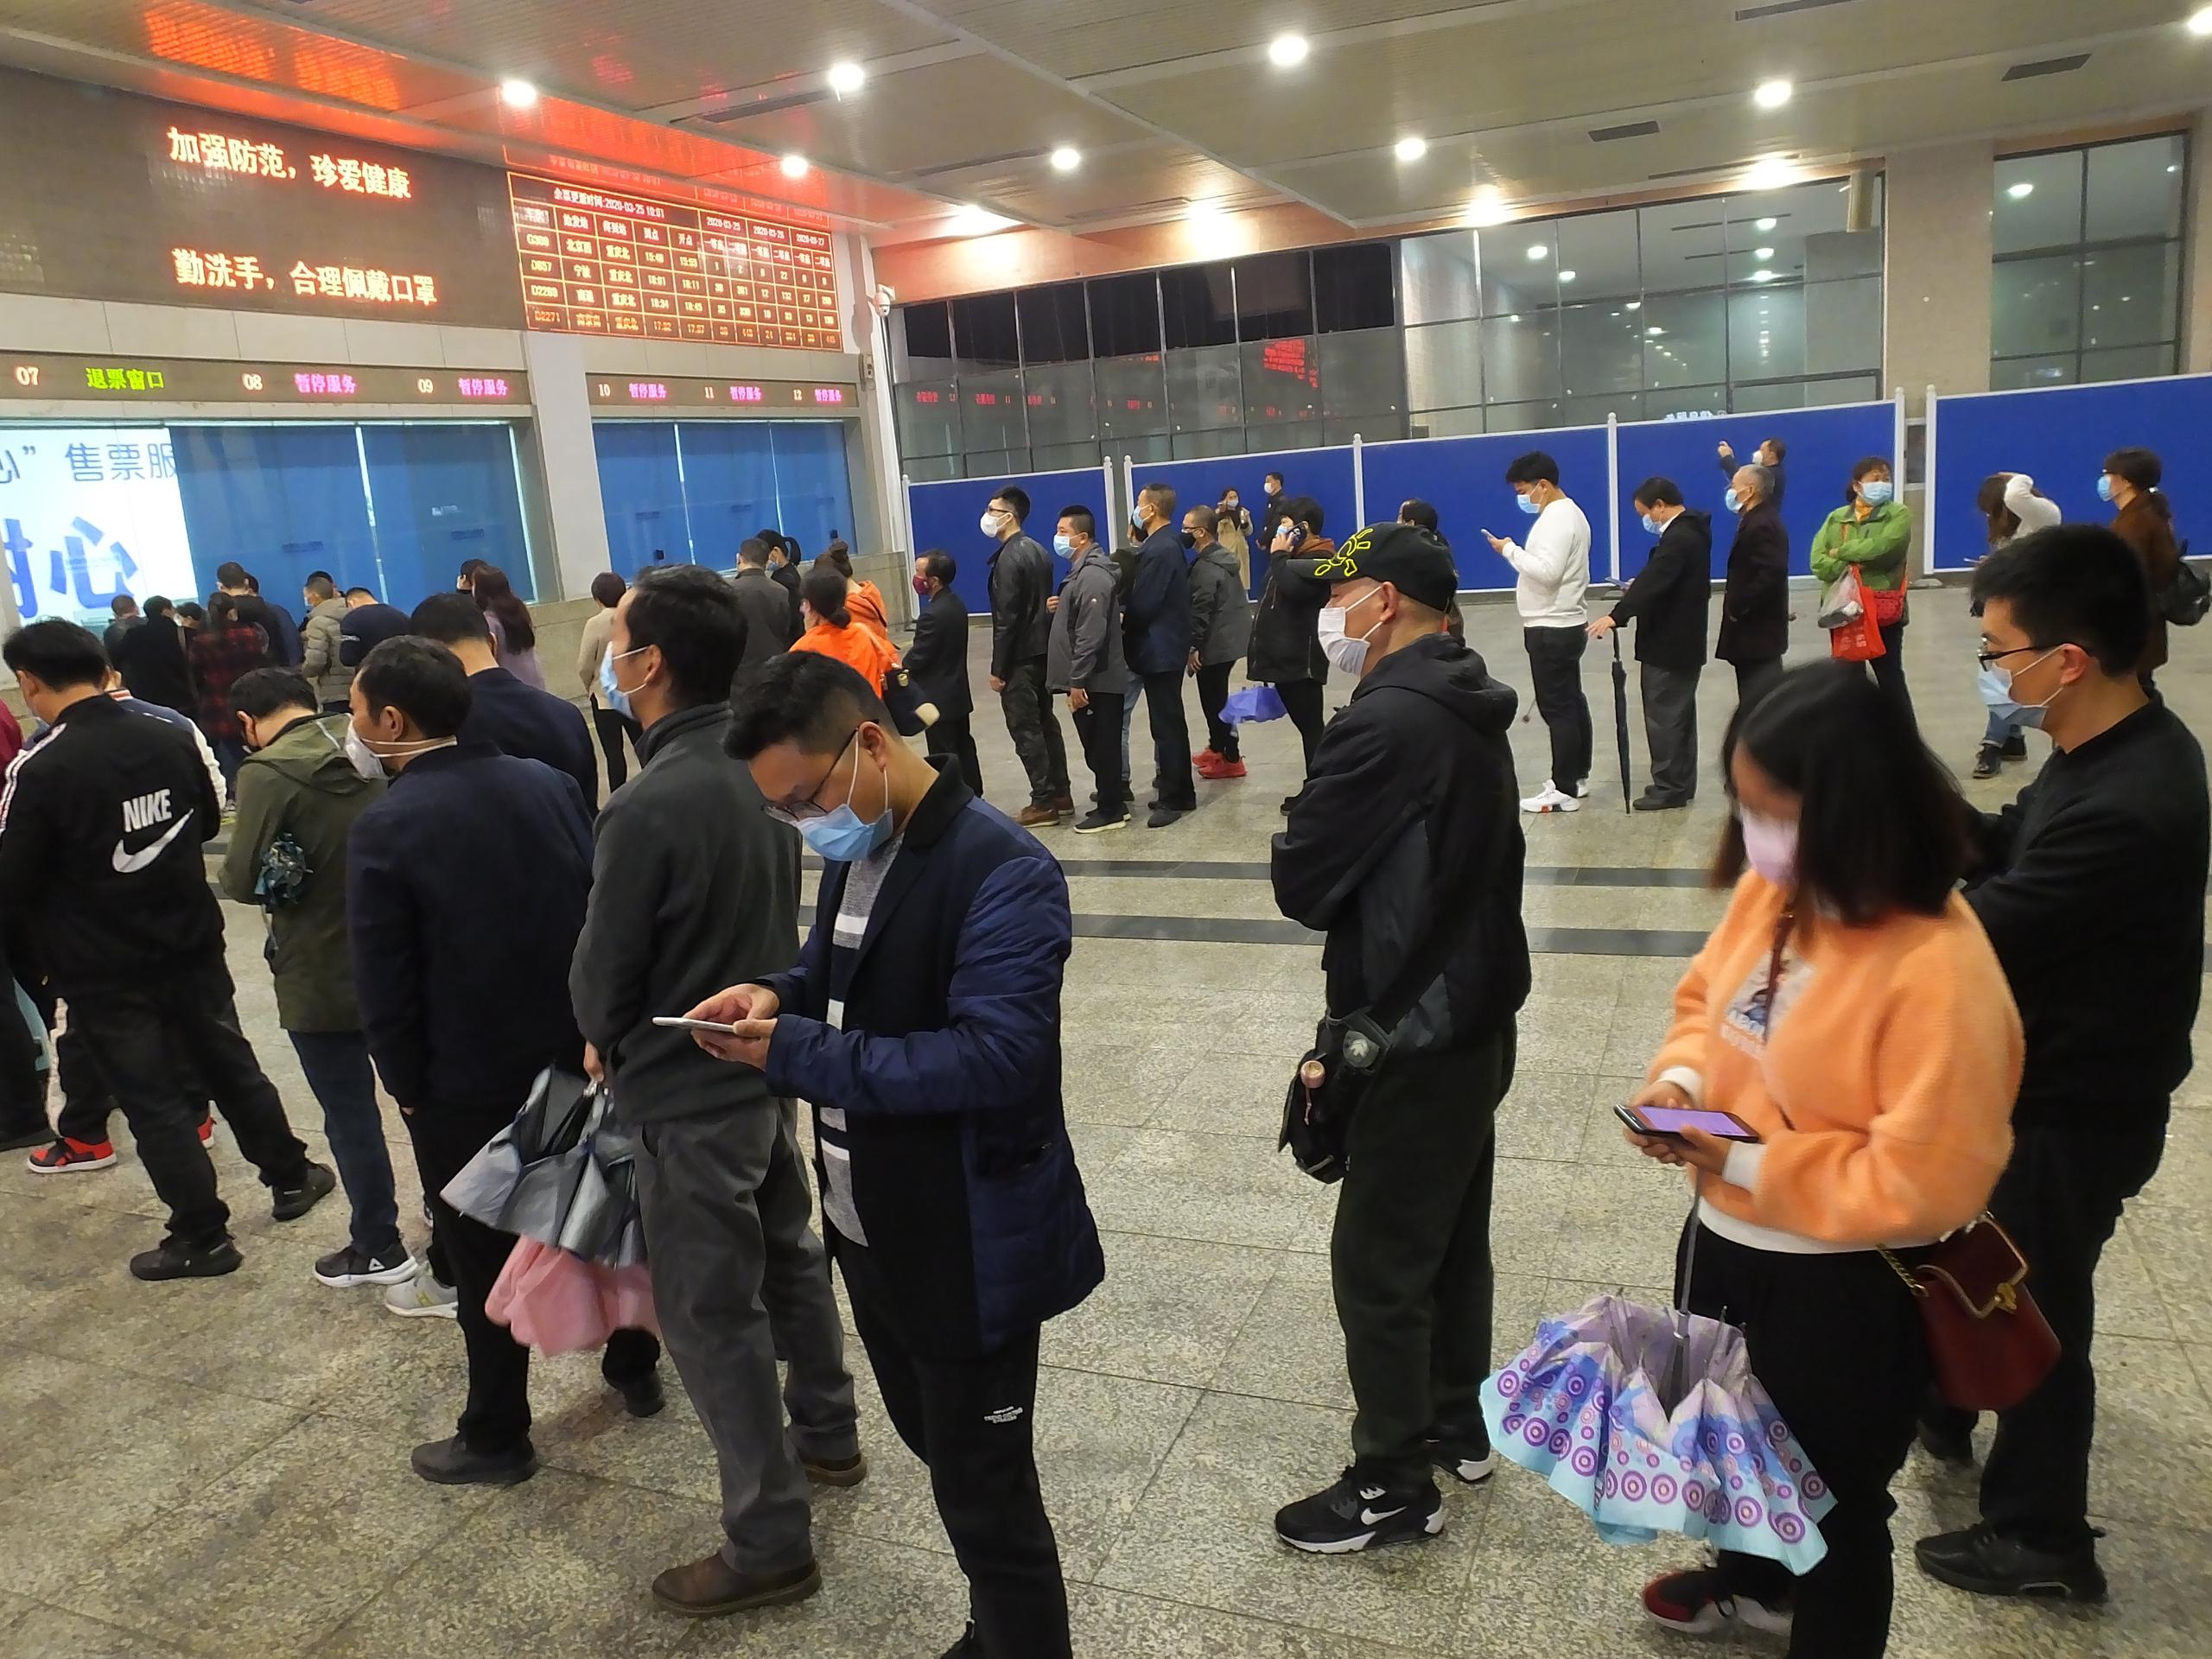 Más de 20,000 personas, entre trabajadores y estudiantes, aguardan en Hubei a su turno para regresar a la capital, según la agencia estatal Xinhua.